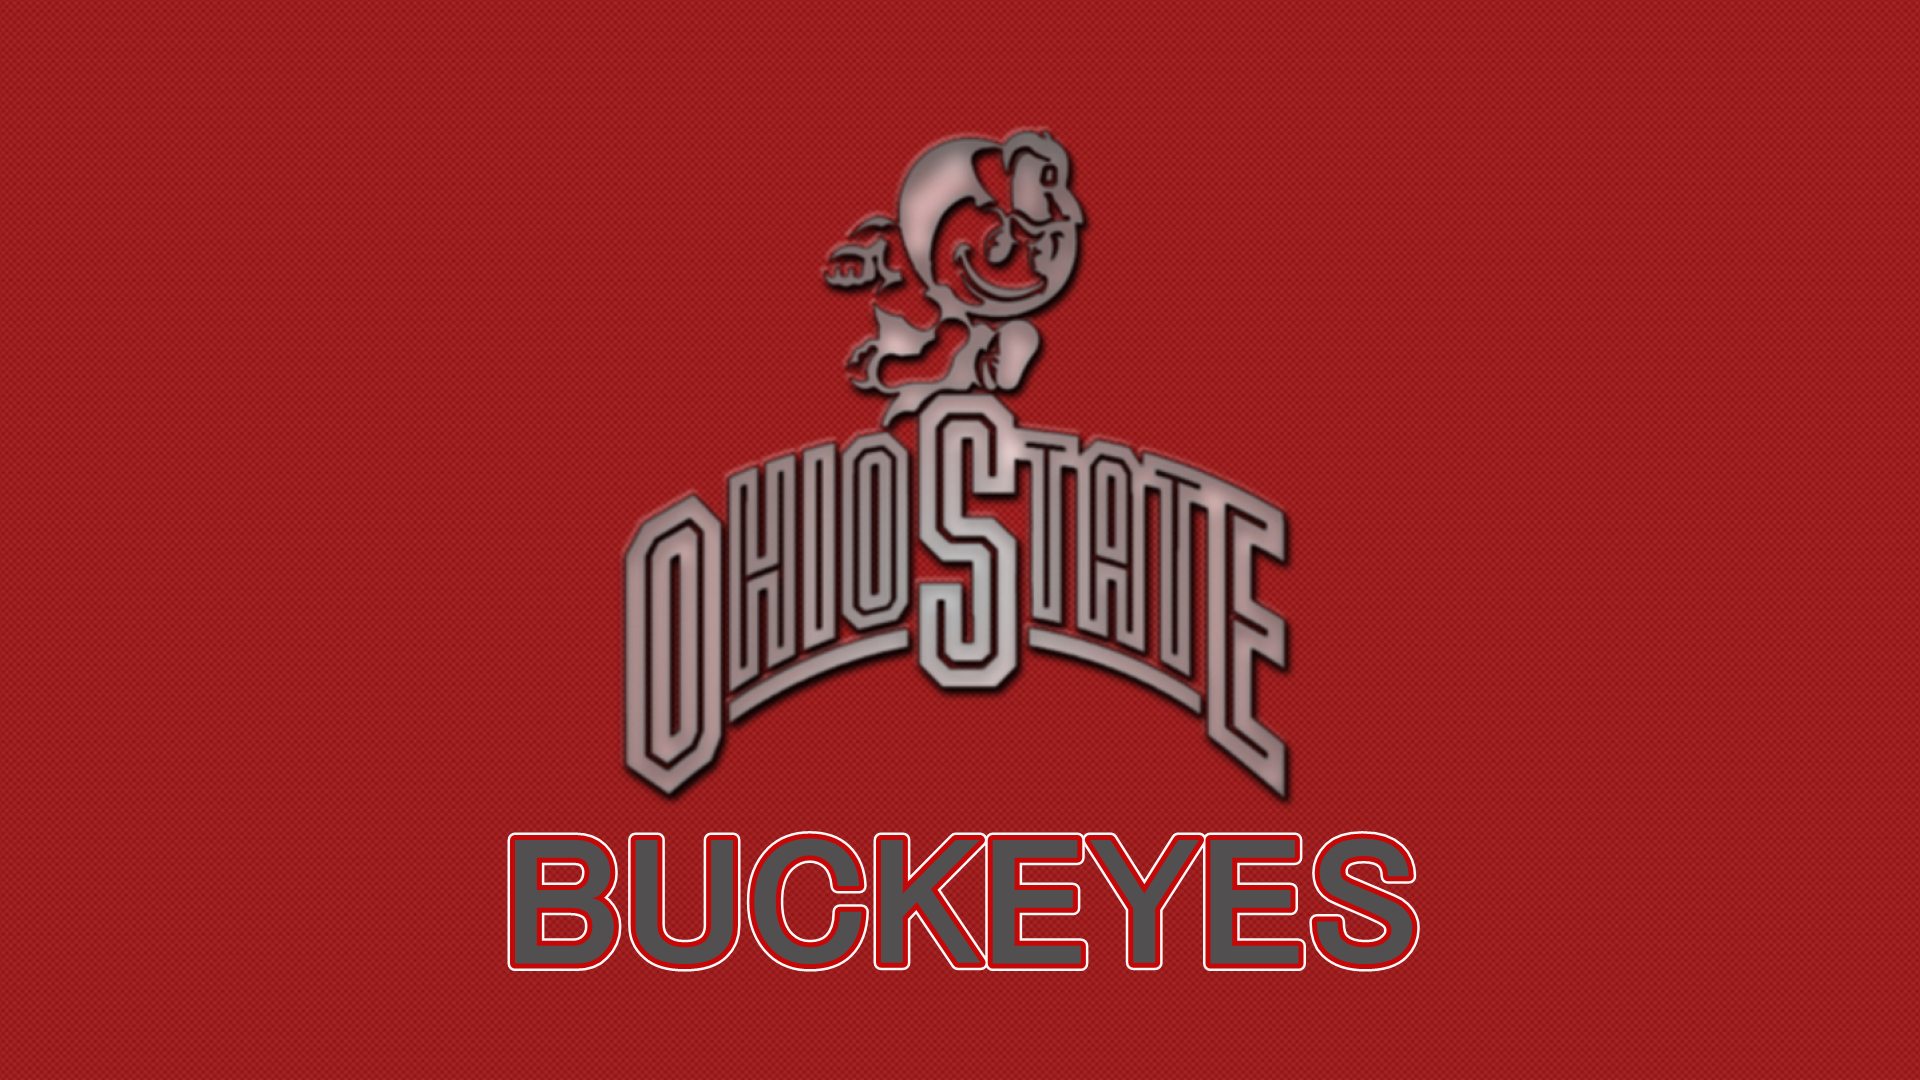 OHIO STATE BRUTUS BUCKEYE - Ohio State Football Wallpaper